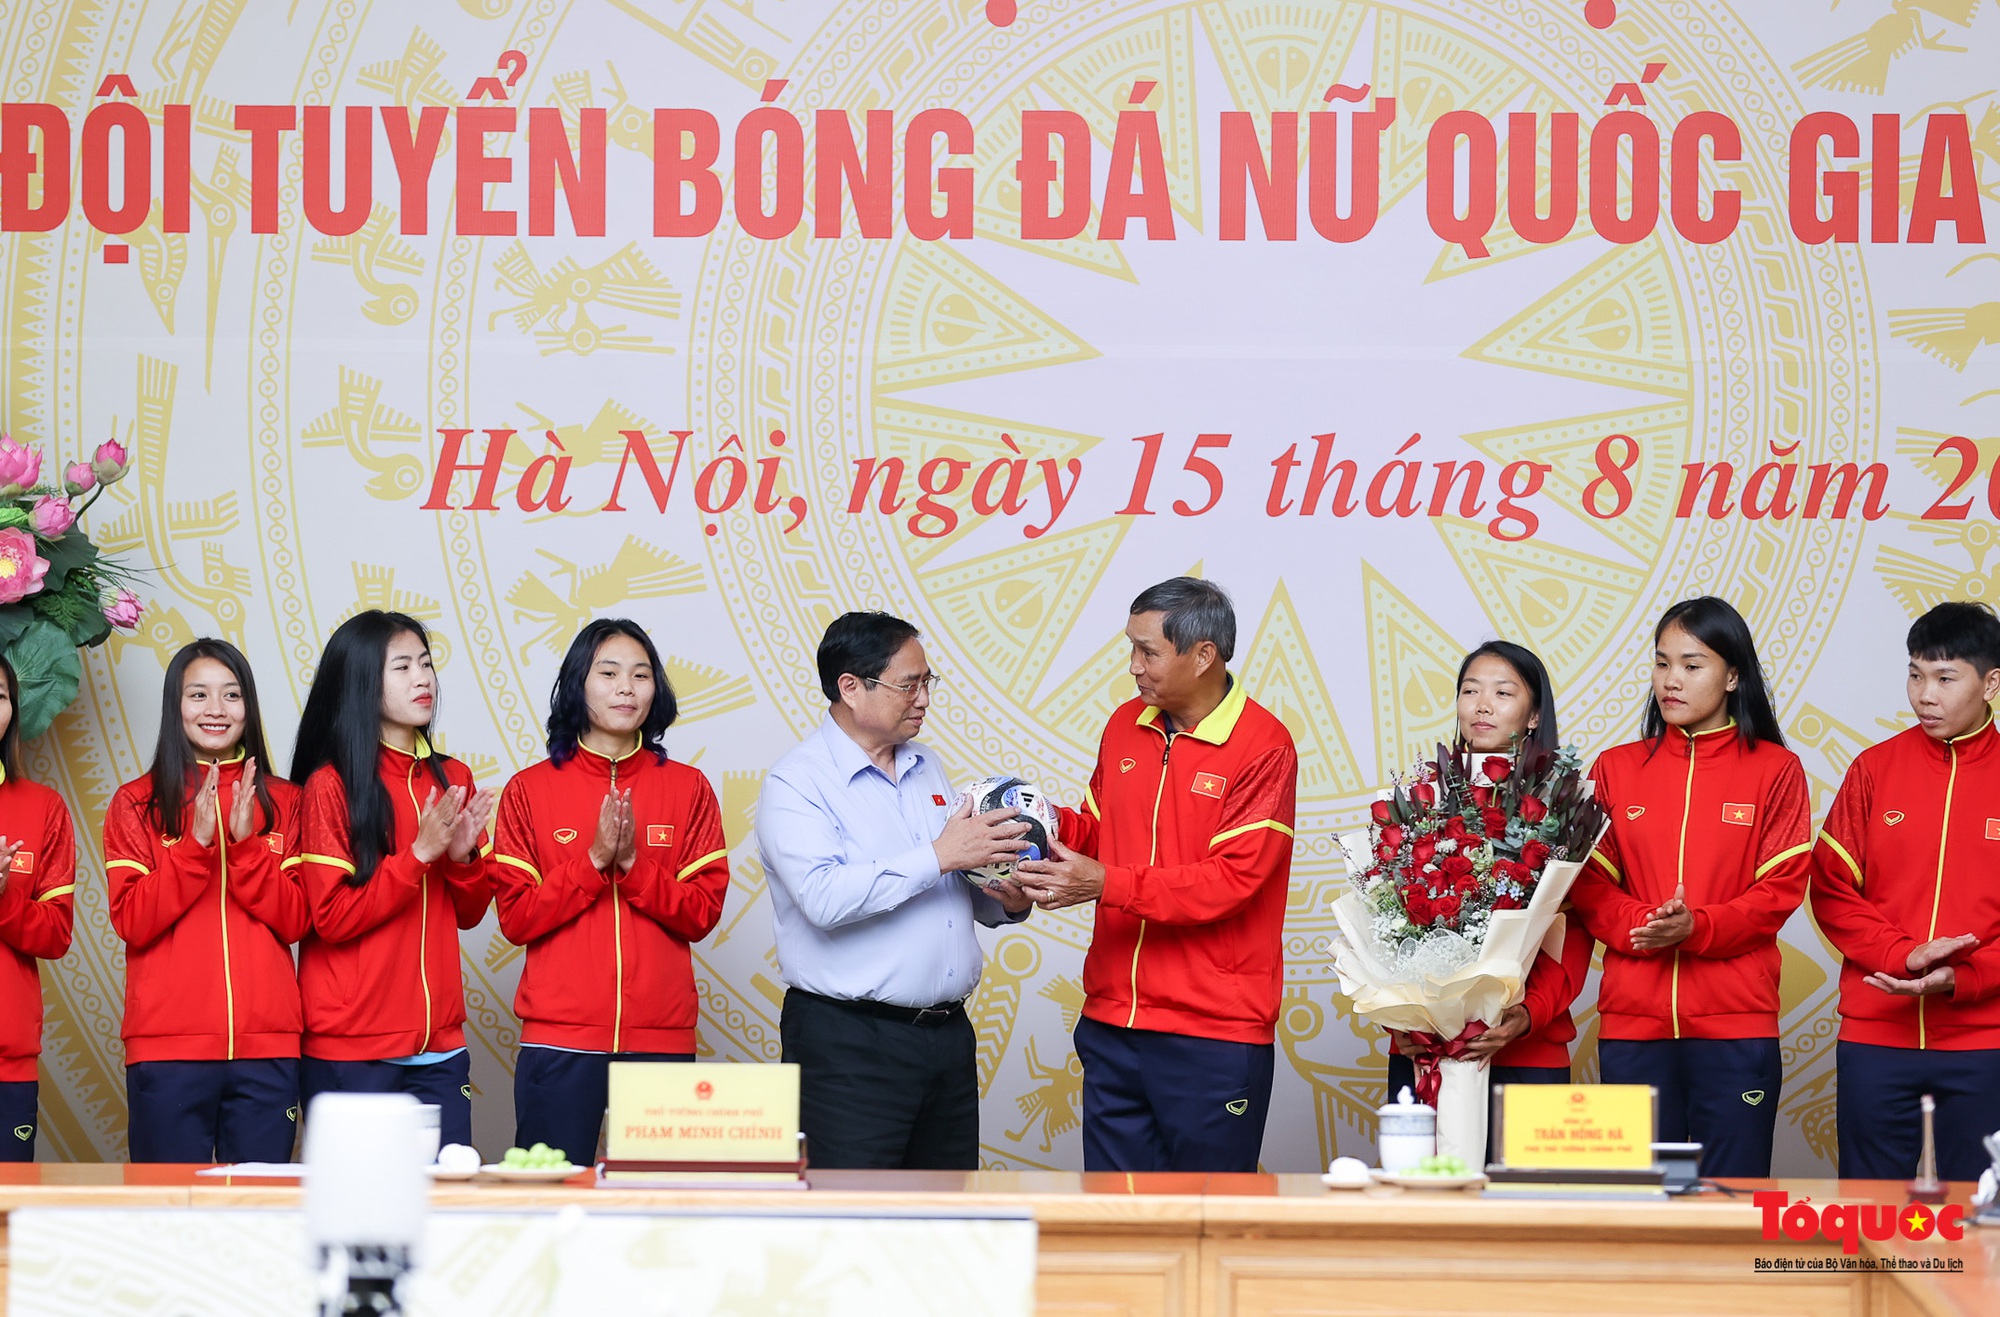 Chùm ảnh: Thủ tướng Phạm Minh Chính gặp mặt, biểu dương Đội tuyển bóng đá nữ Quốc gia Việt Nam - Ảnh 9.